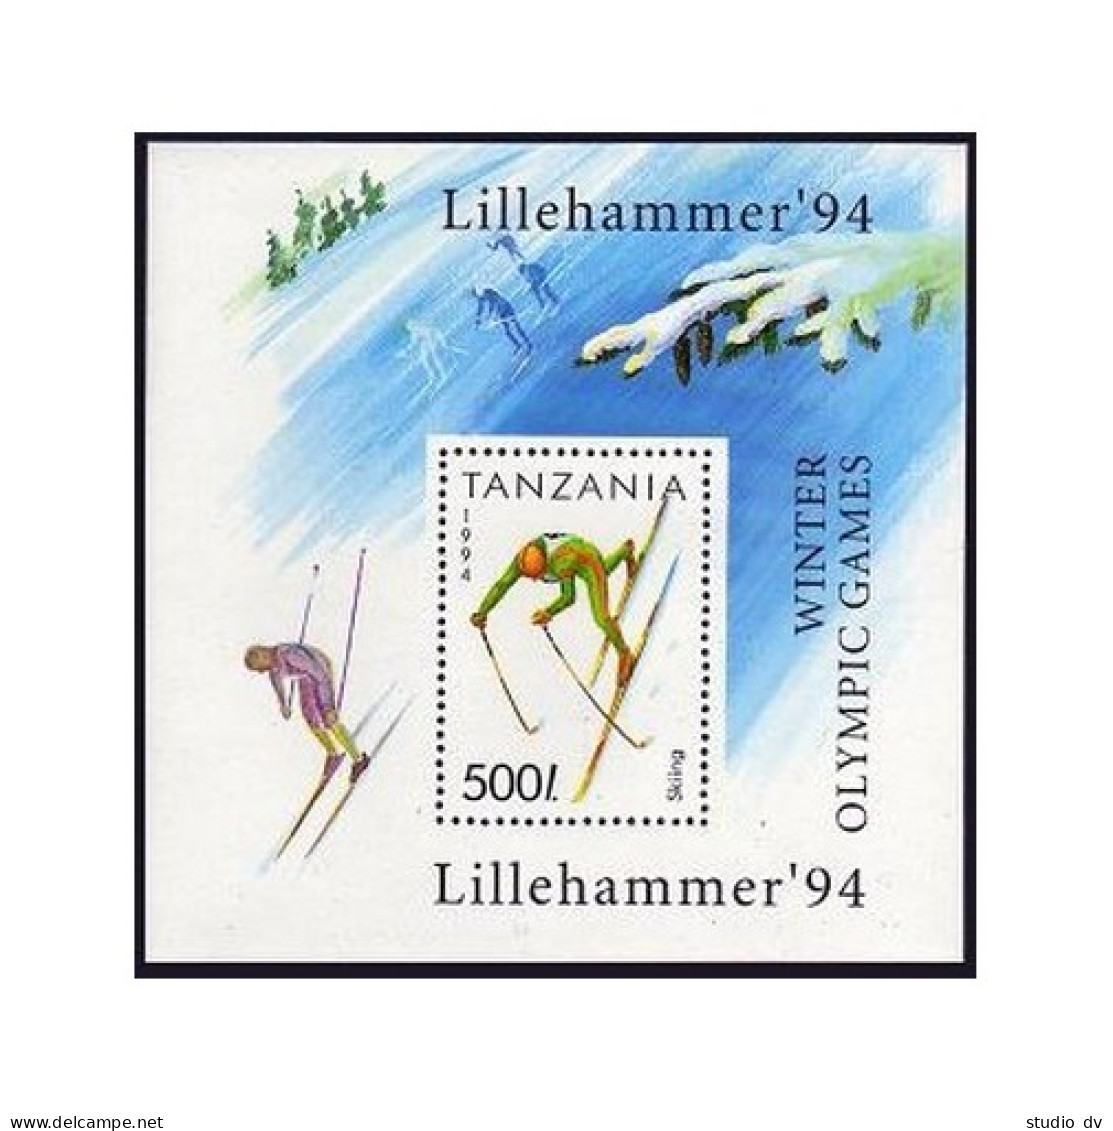 Tanzania 1201-1207,1208,MNH.Michel 1705-1711,Bl.239. Olympics Lillehammer-1994. - Tanzanie (1964-...)